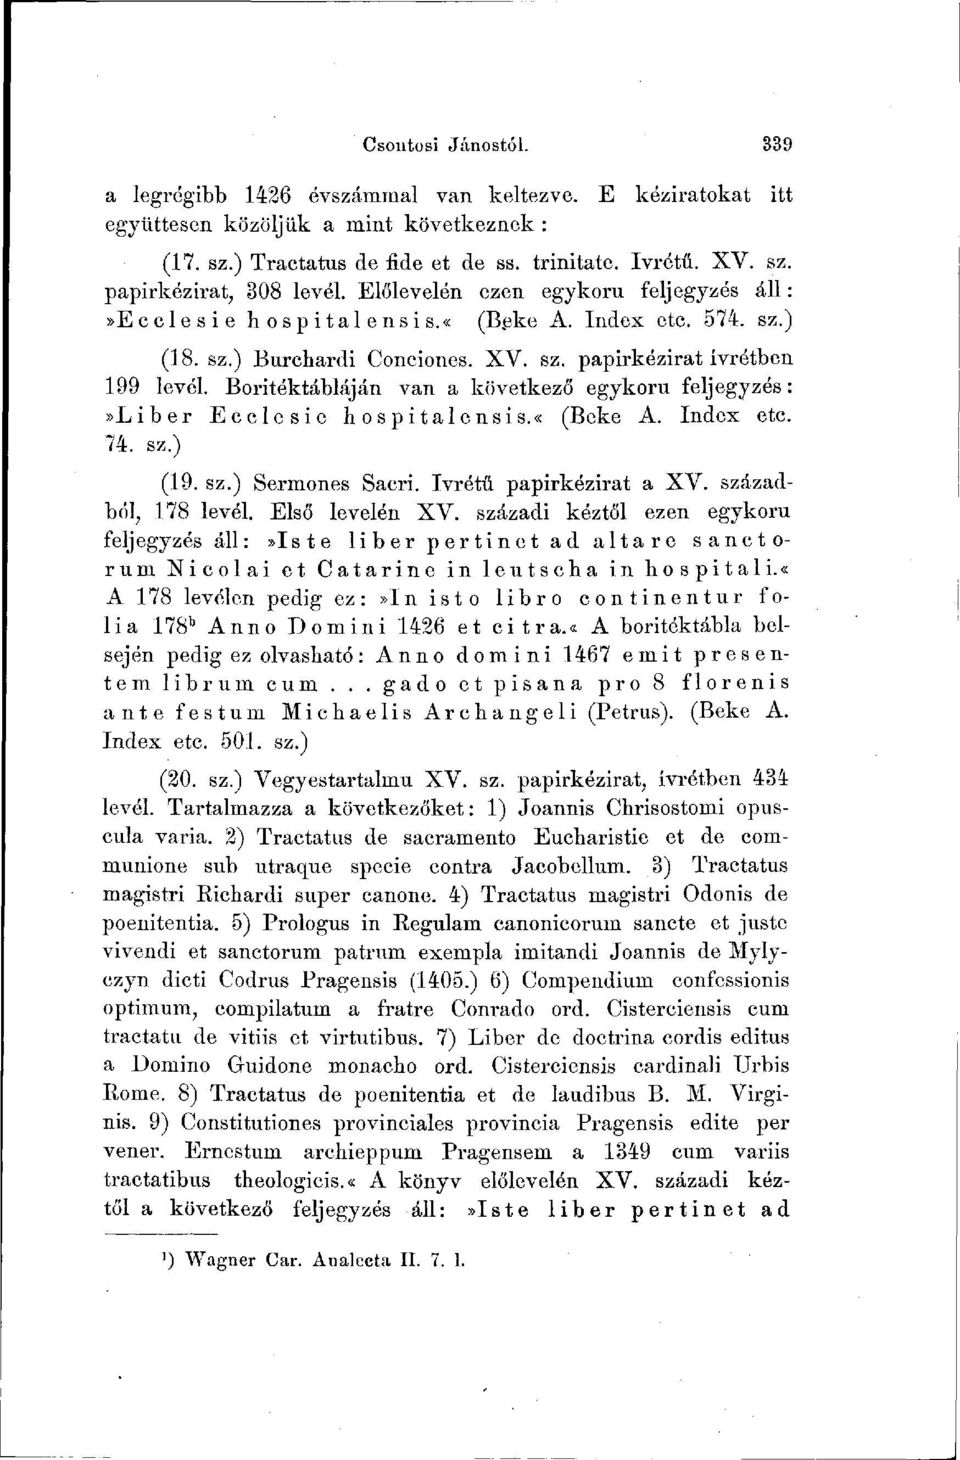 Boritéktábláján van a következő egykorú feljegyzés:»liber Ecclesie hospitalensis.«(beké A. Index etc. 74. sz.) (19. sz.) Sermones Sacri. Ivrétű papirkézirat a XV. századból, 178 levél.